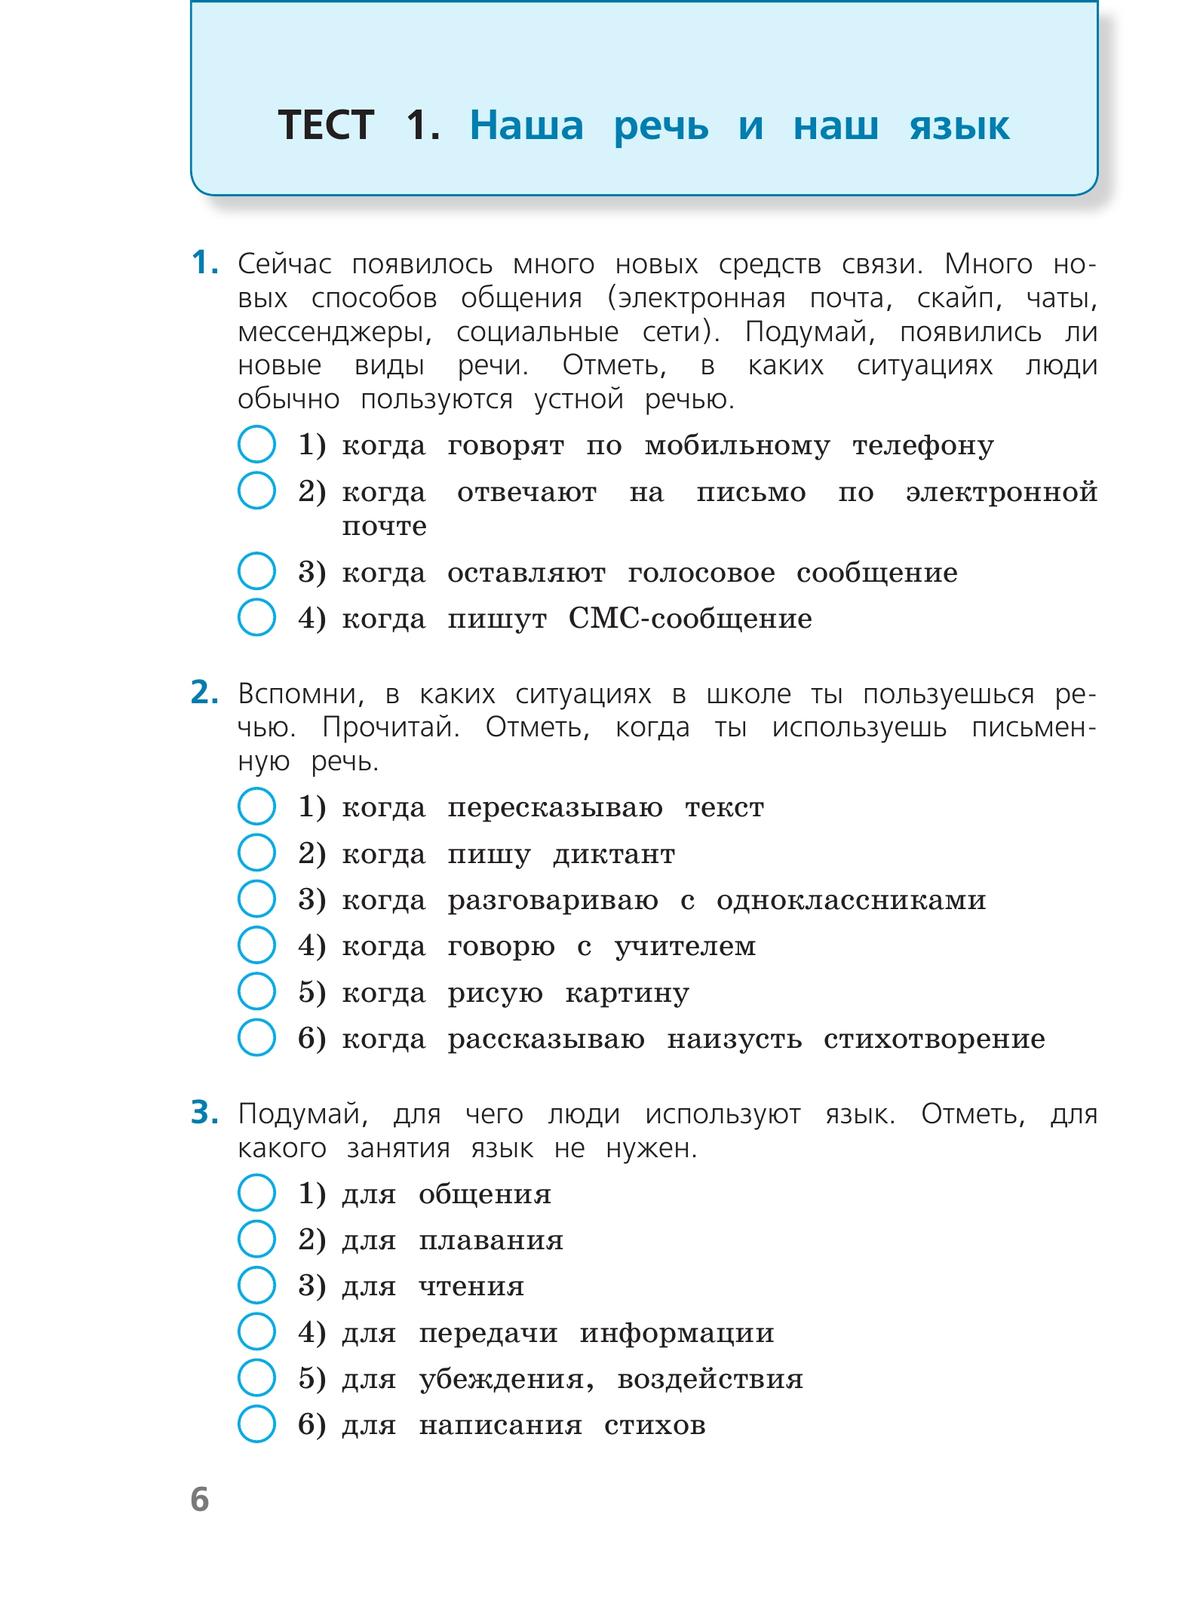 Русский язык. Тесты. 3 класс 7